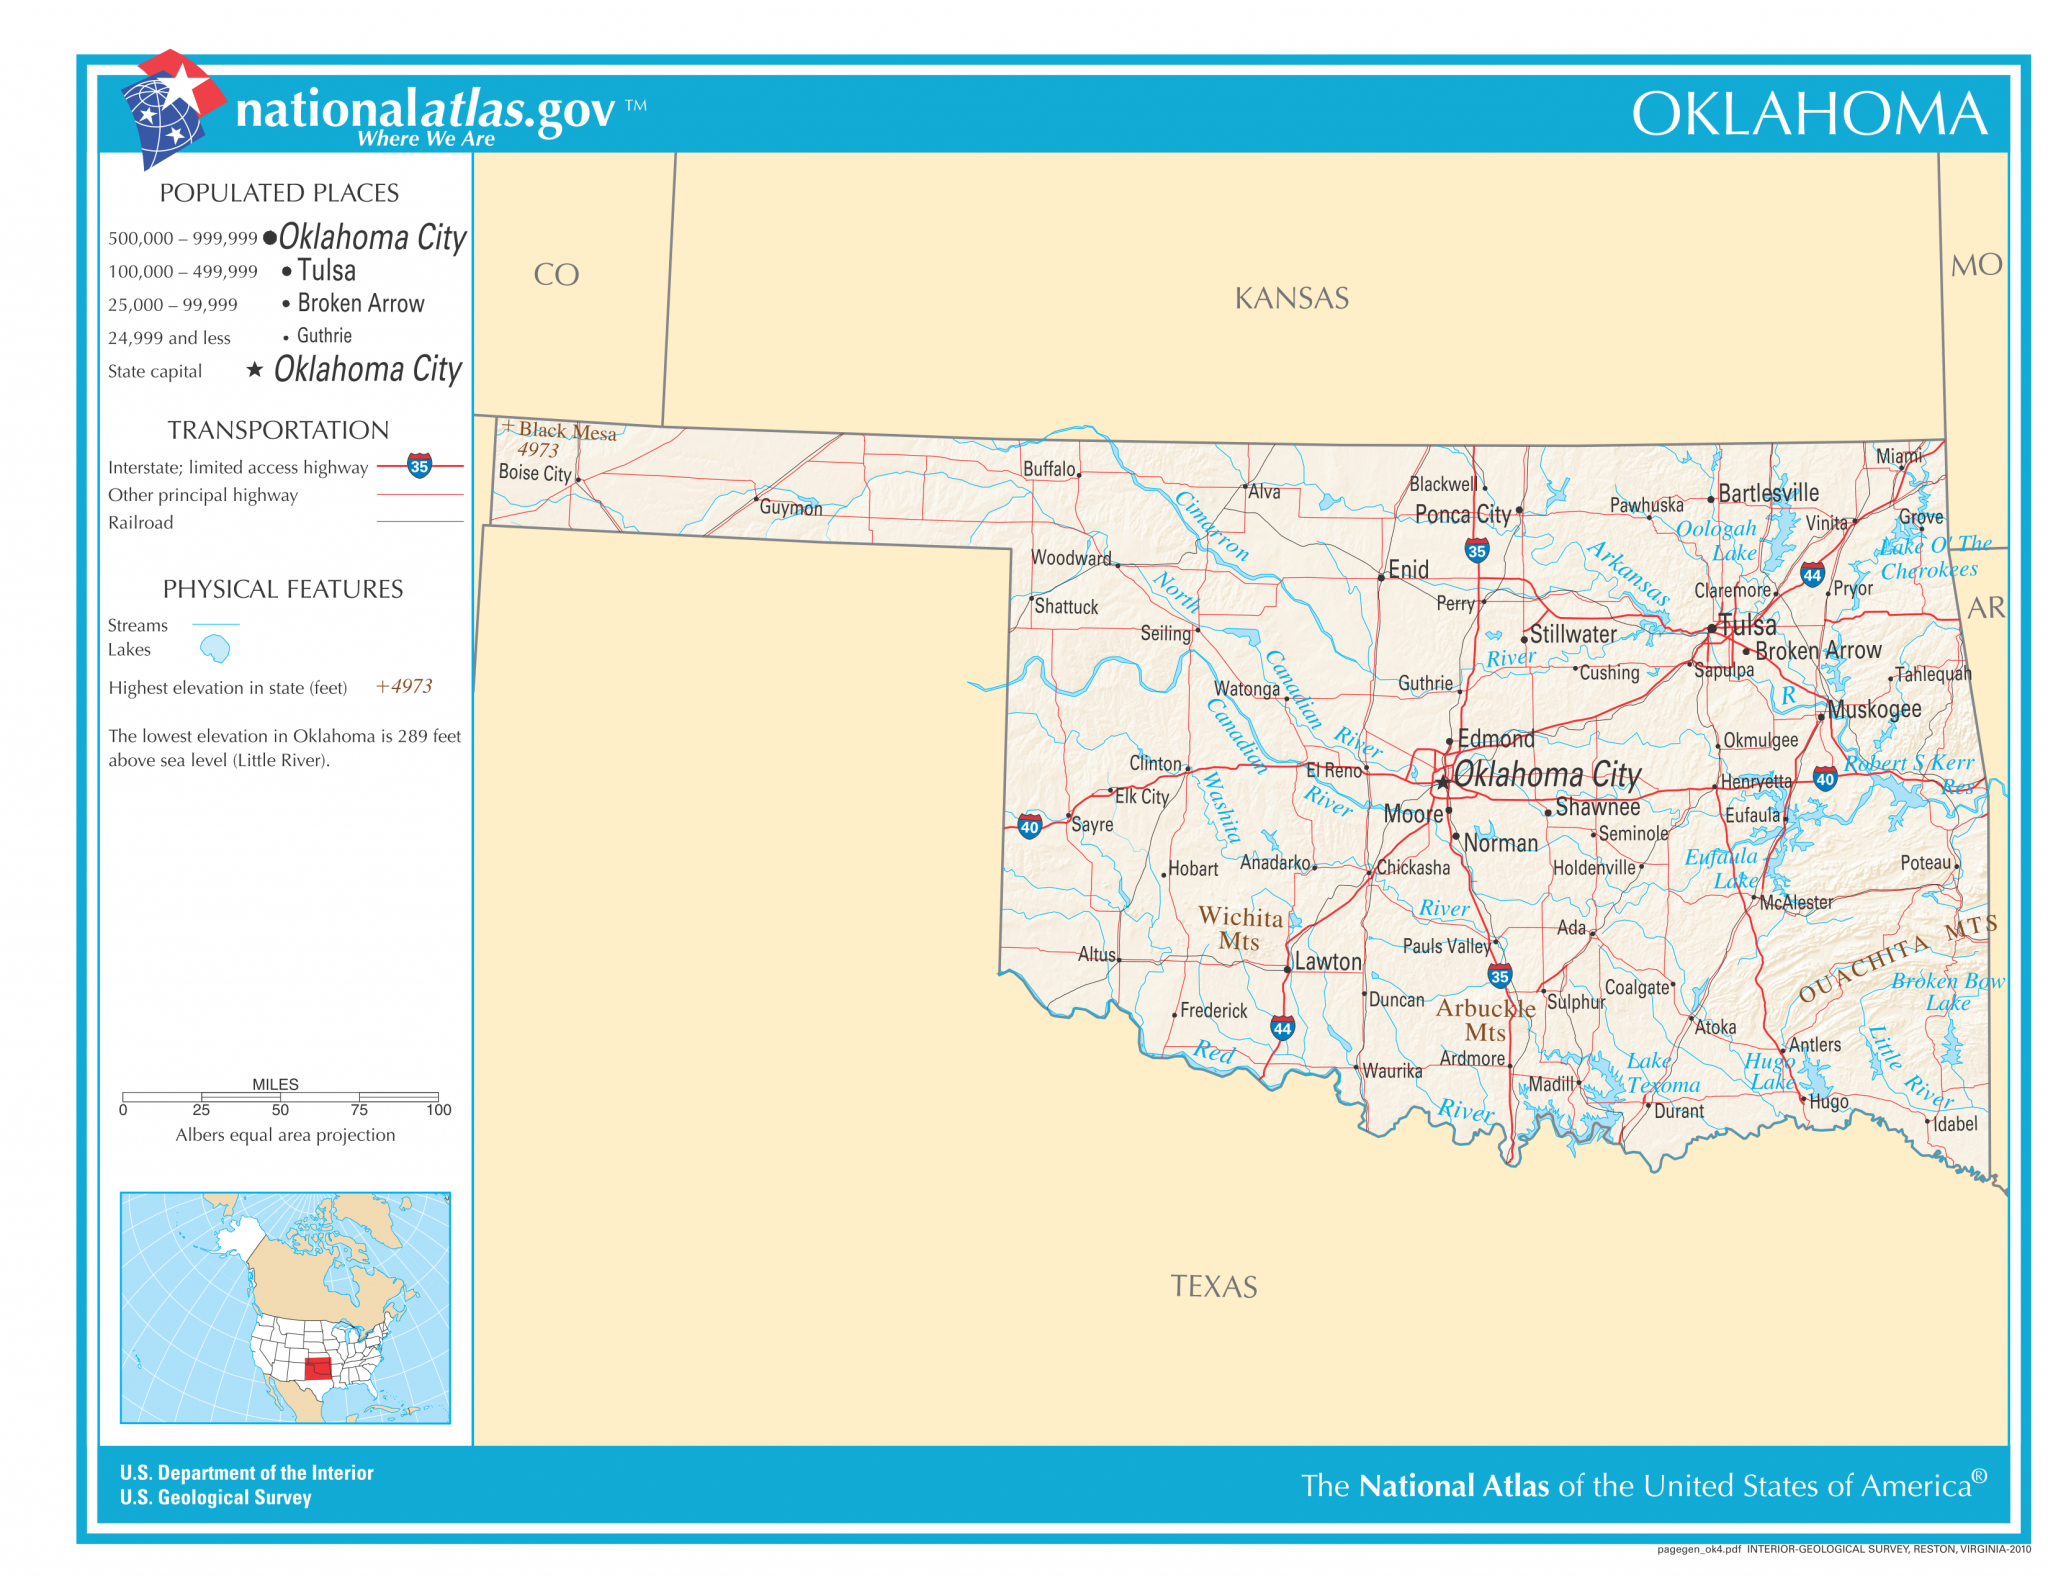 Oklahoma - Das Land der Indianer und Cowboys - USA-Info.net